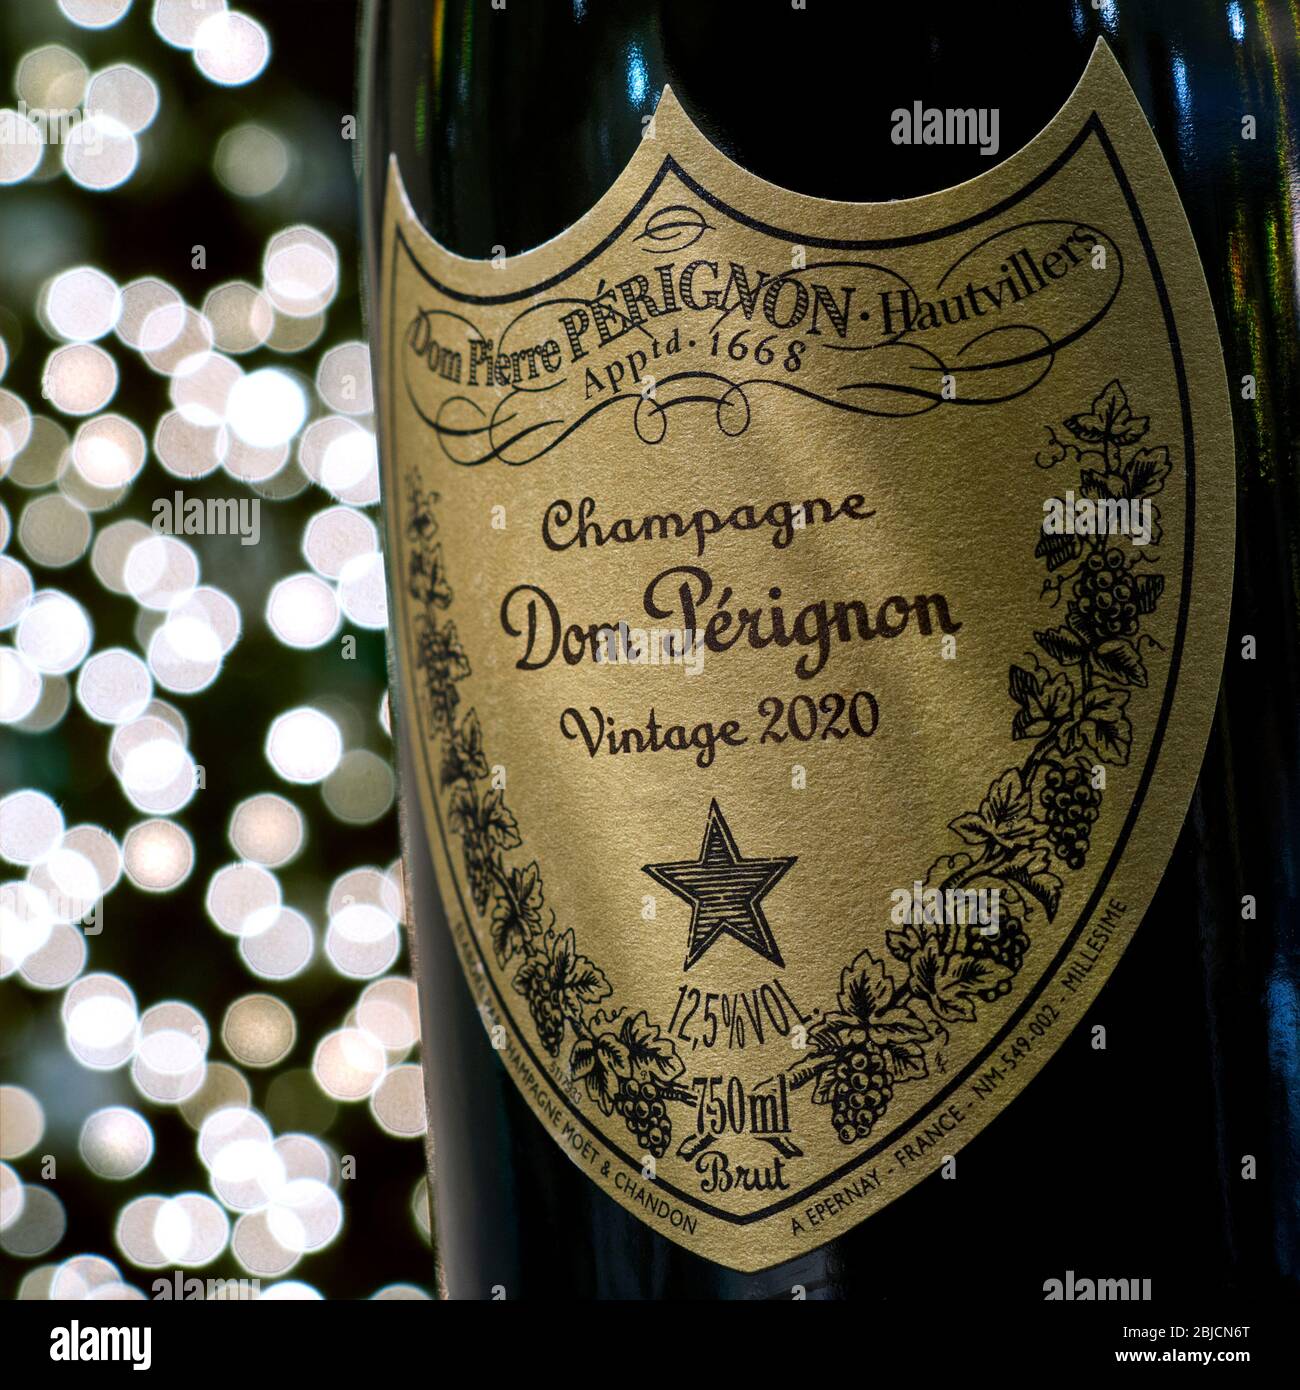 Bouteille de champagne Dom Perignon et étiquette dans une ambiance de fête  avec lumières étincelantes en arrière-plan concept label post-daté à la  célébration Vintage 2020 Photo Stock - Alamy